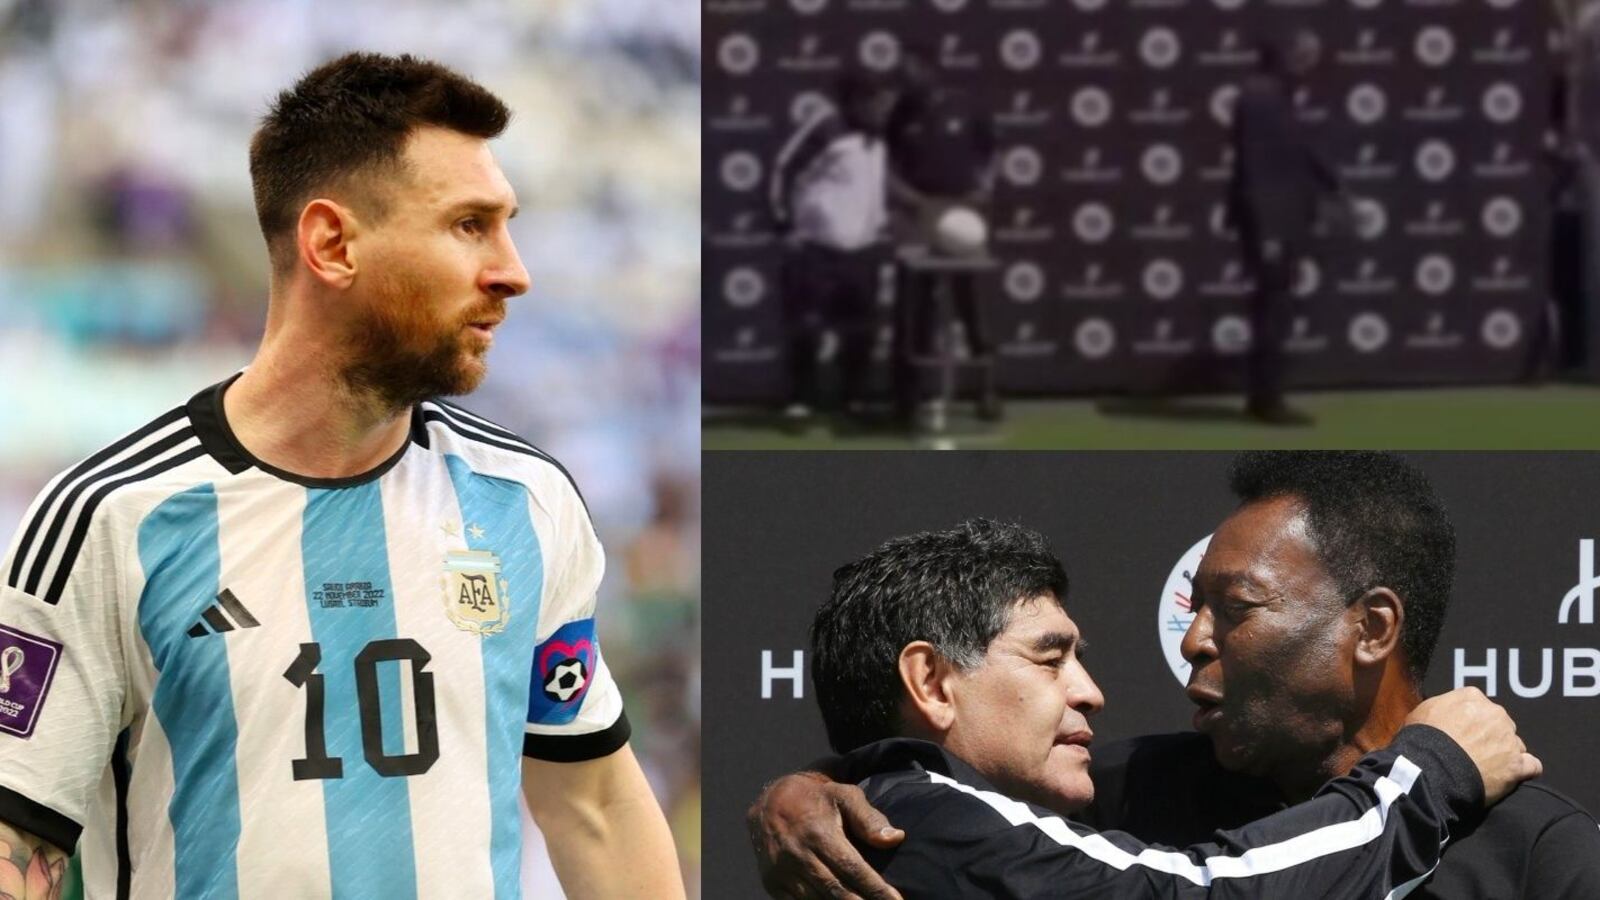 Dijo ser superior a México, ahora Messi paga su soberbia contra Maradona y Pelé